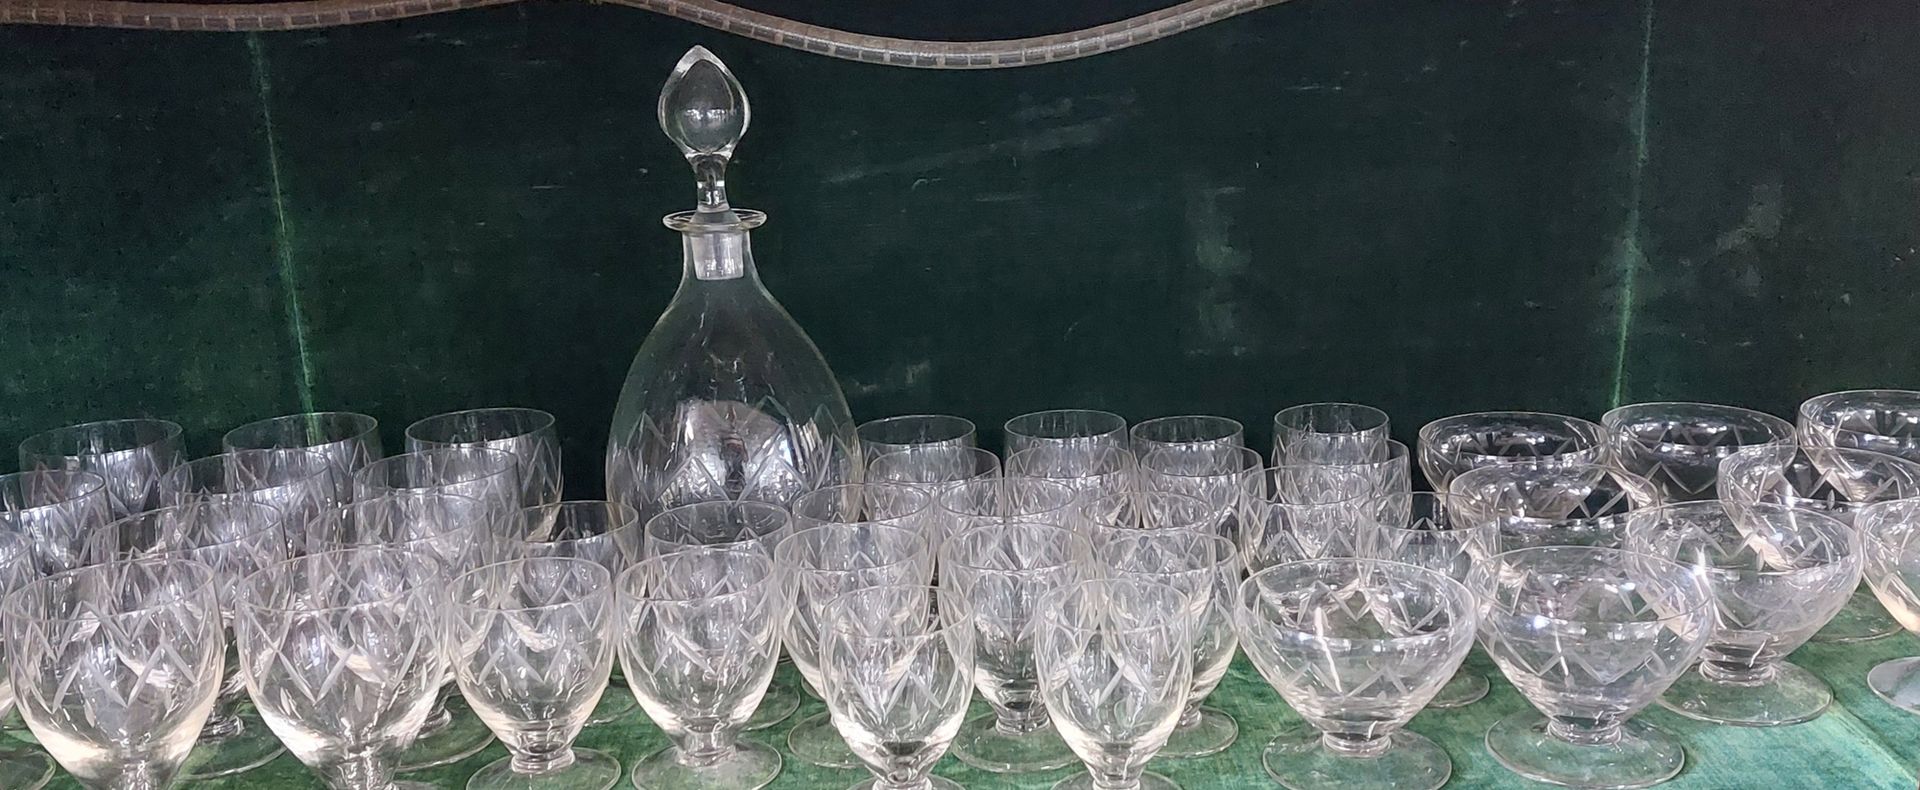 Null juego de cristal compuesto por :

- 10 vasos de agua

- 10 copas de vino

-&hellip;